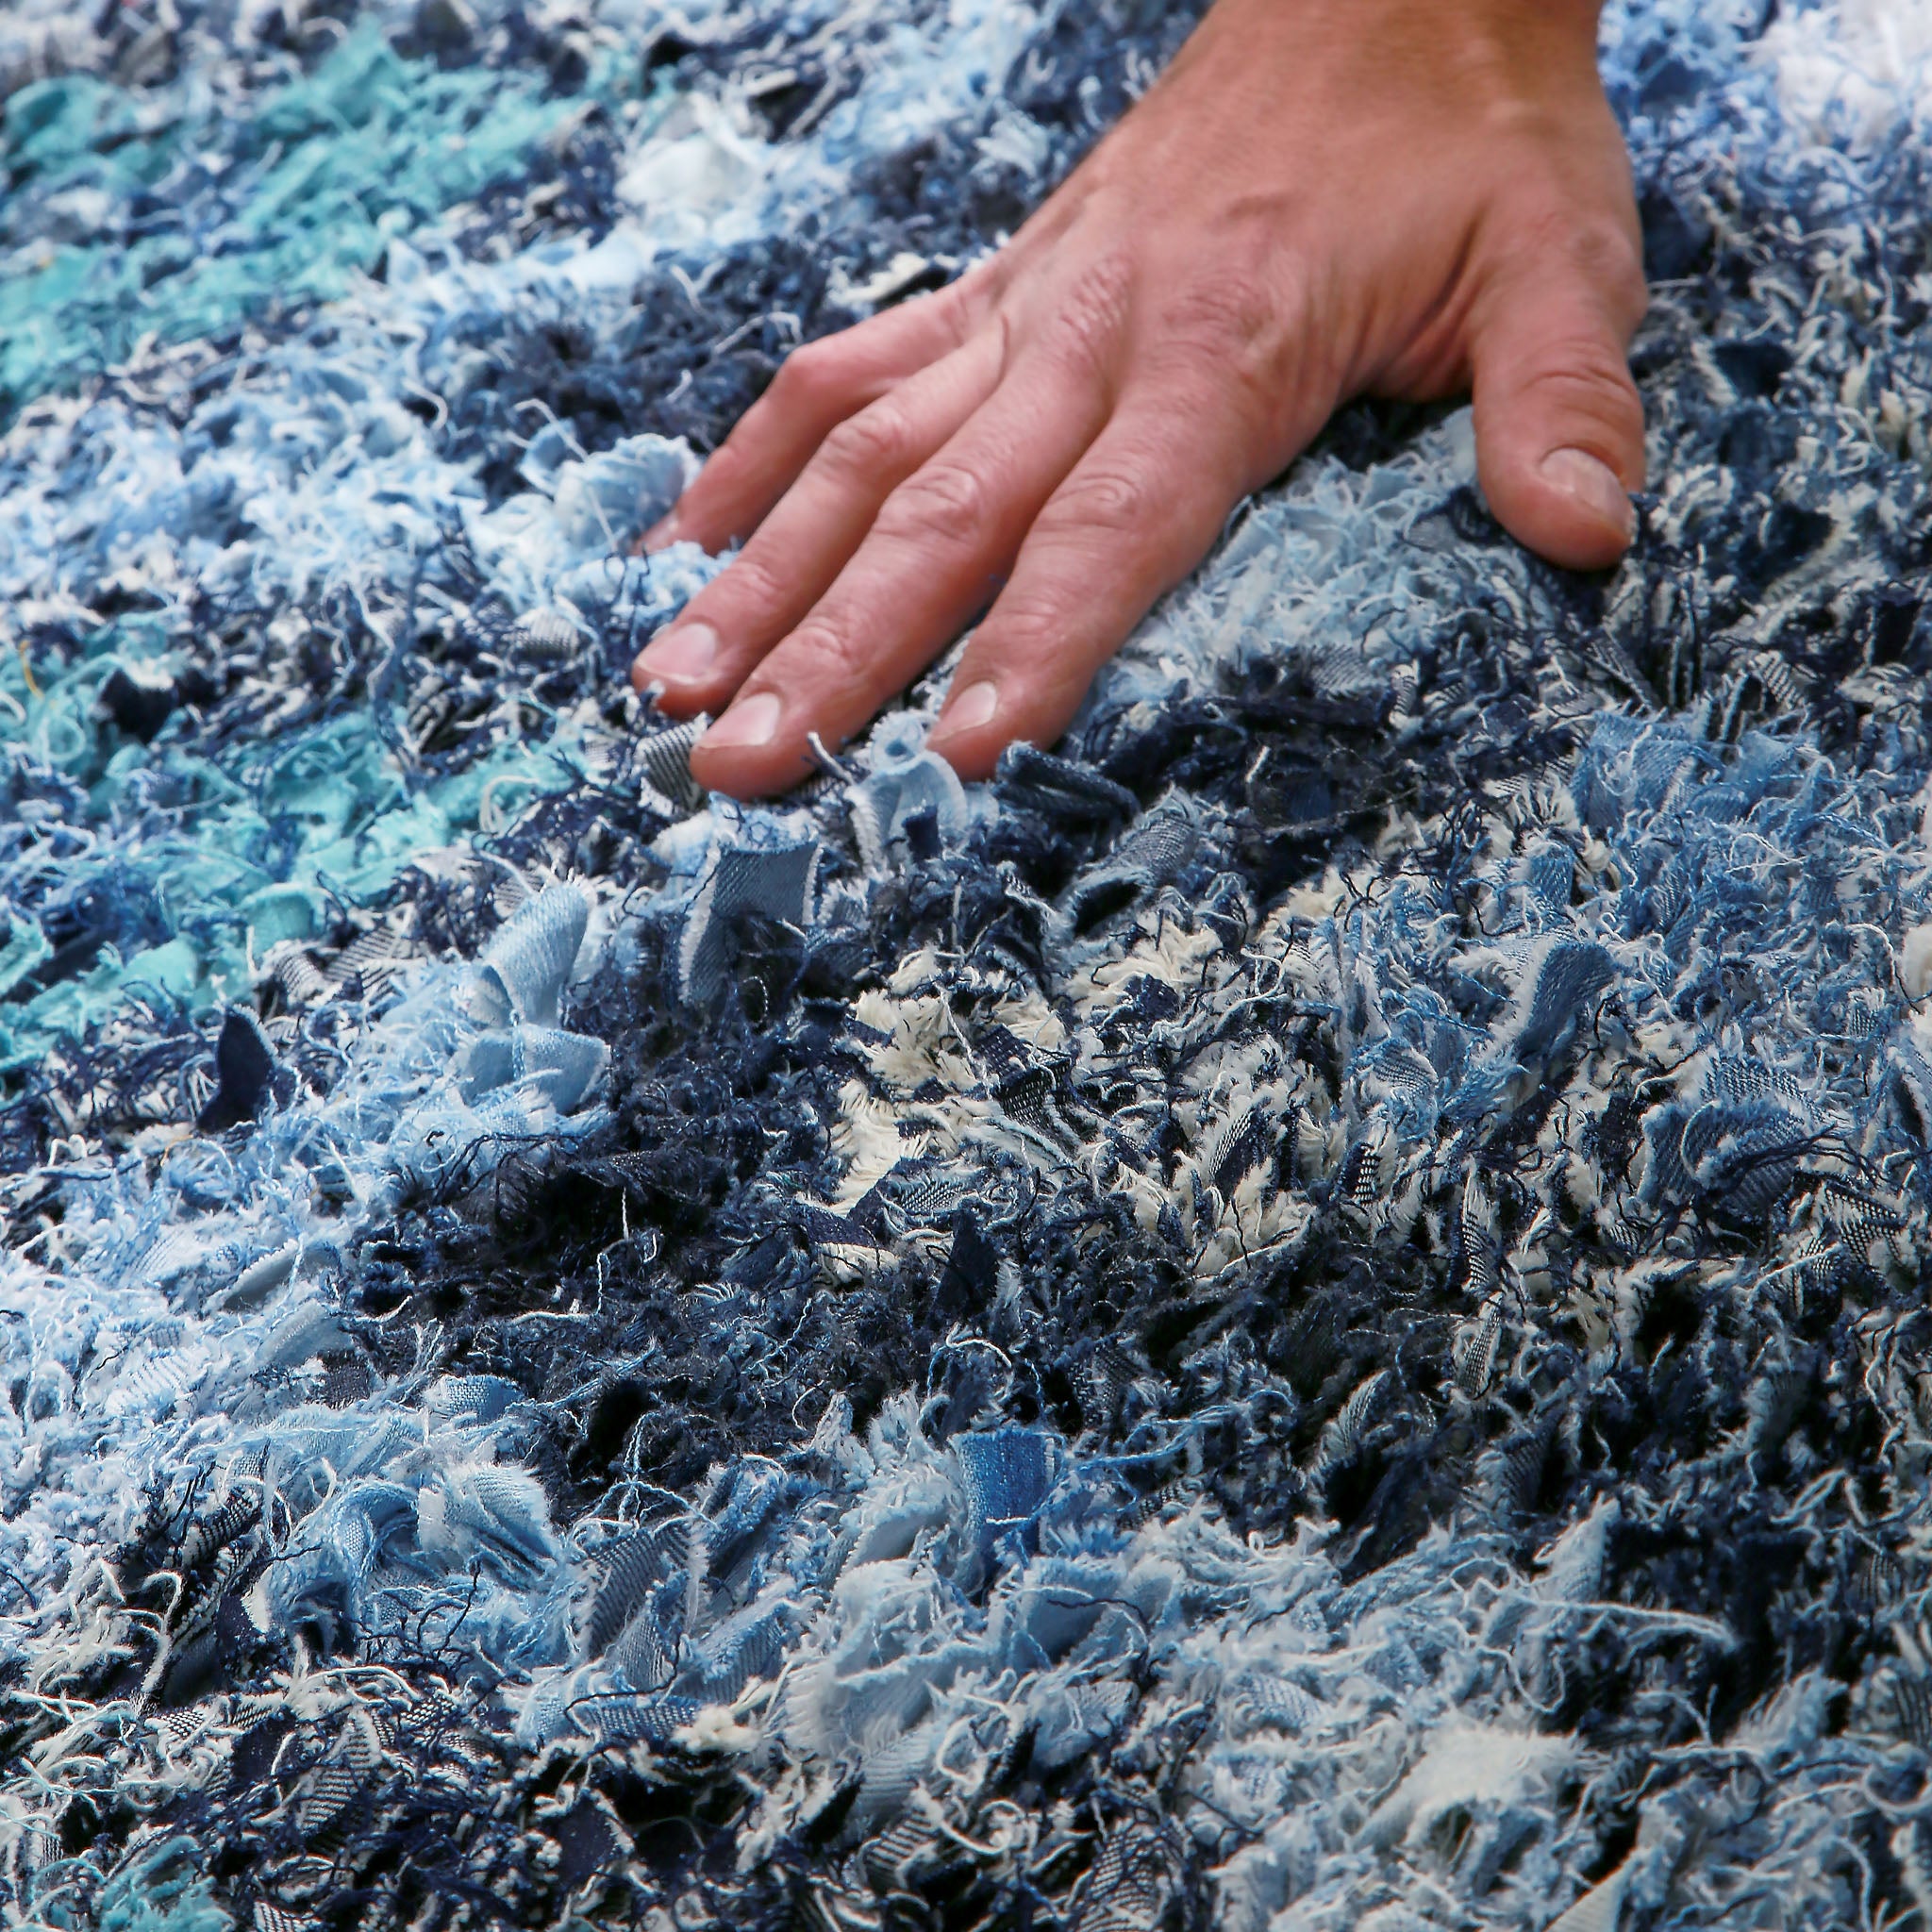 mano appoggiata su un tappeto realizzato annodando fettuccine di tessuto ricavate da vecchi jeans